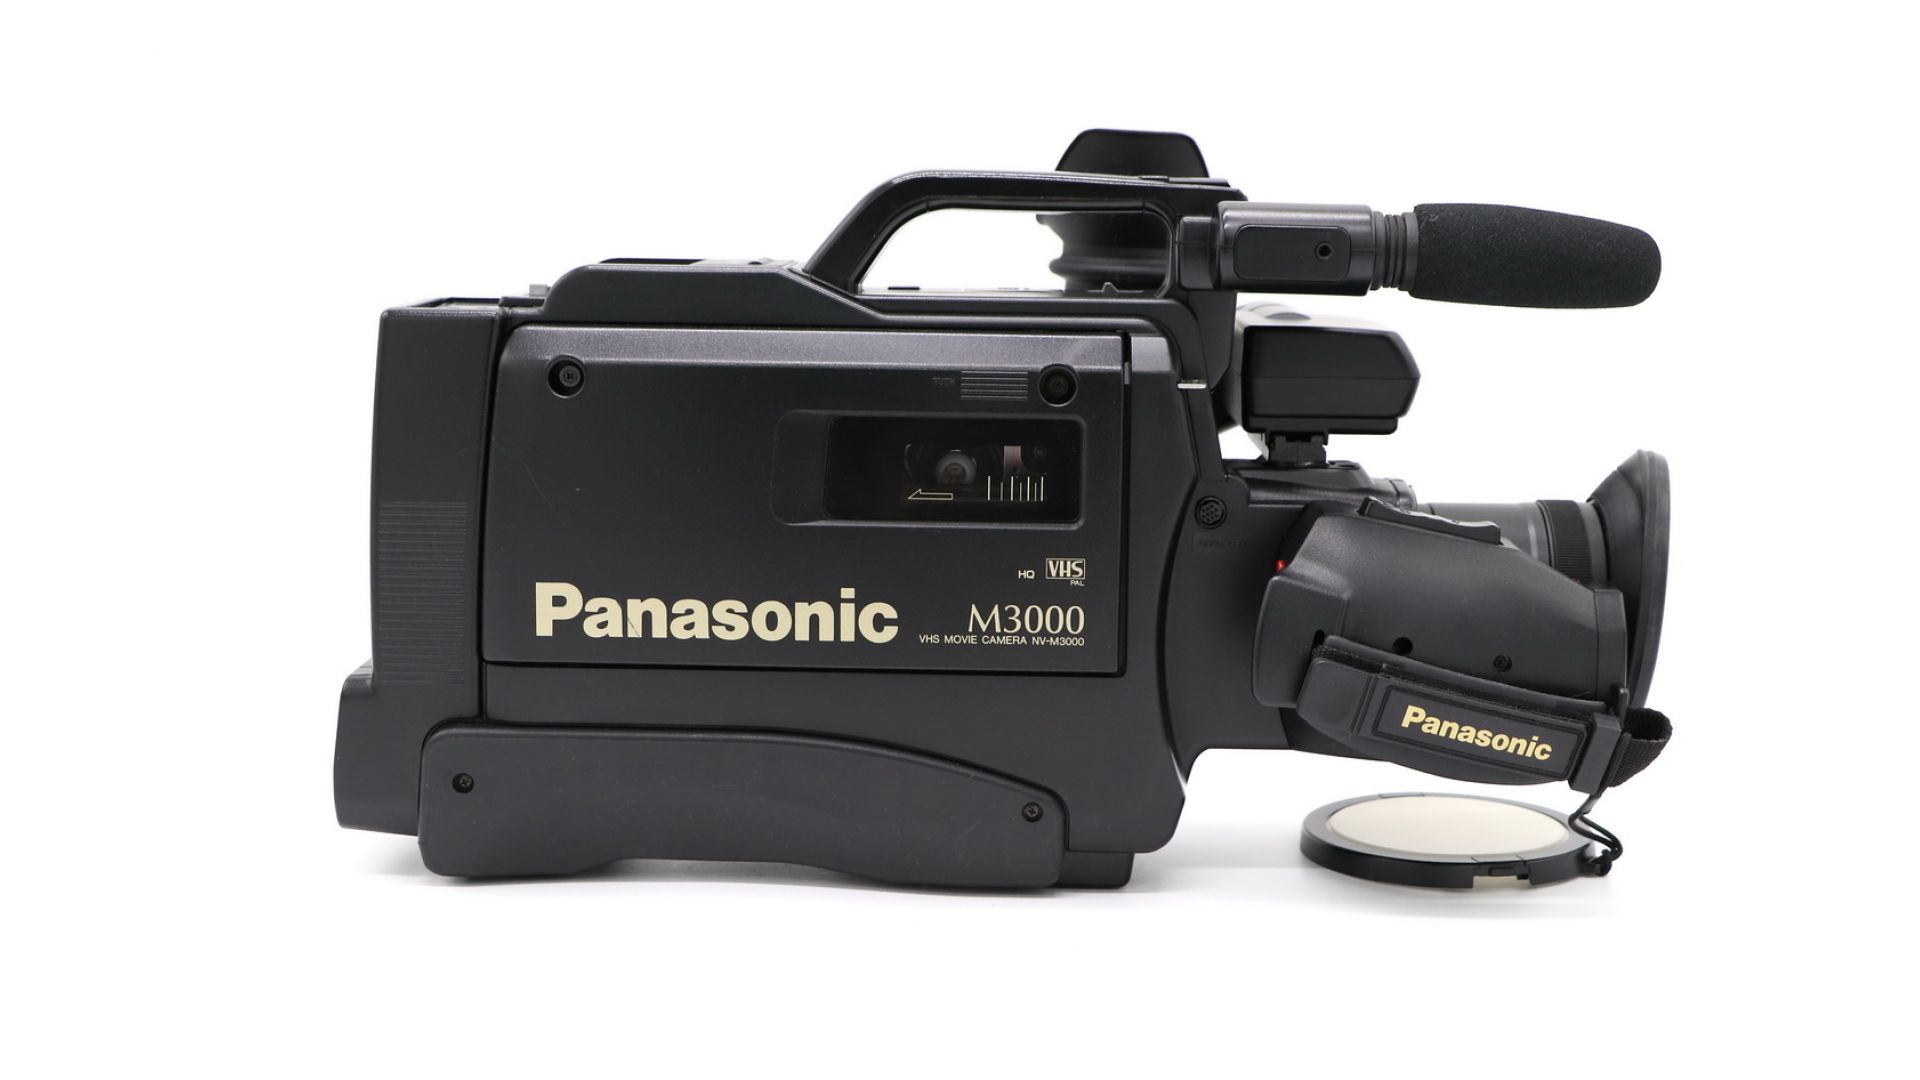 Panasonic VHS NV-m3000. Panasonic m3000 VHS. Panasonic NV 3000. Камера Панасоник m3000. Panasonic m3000